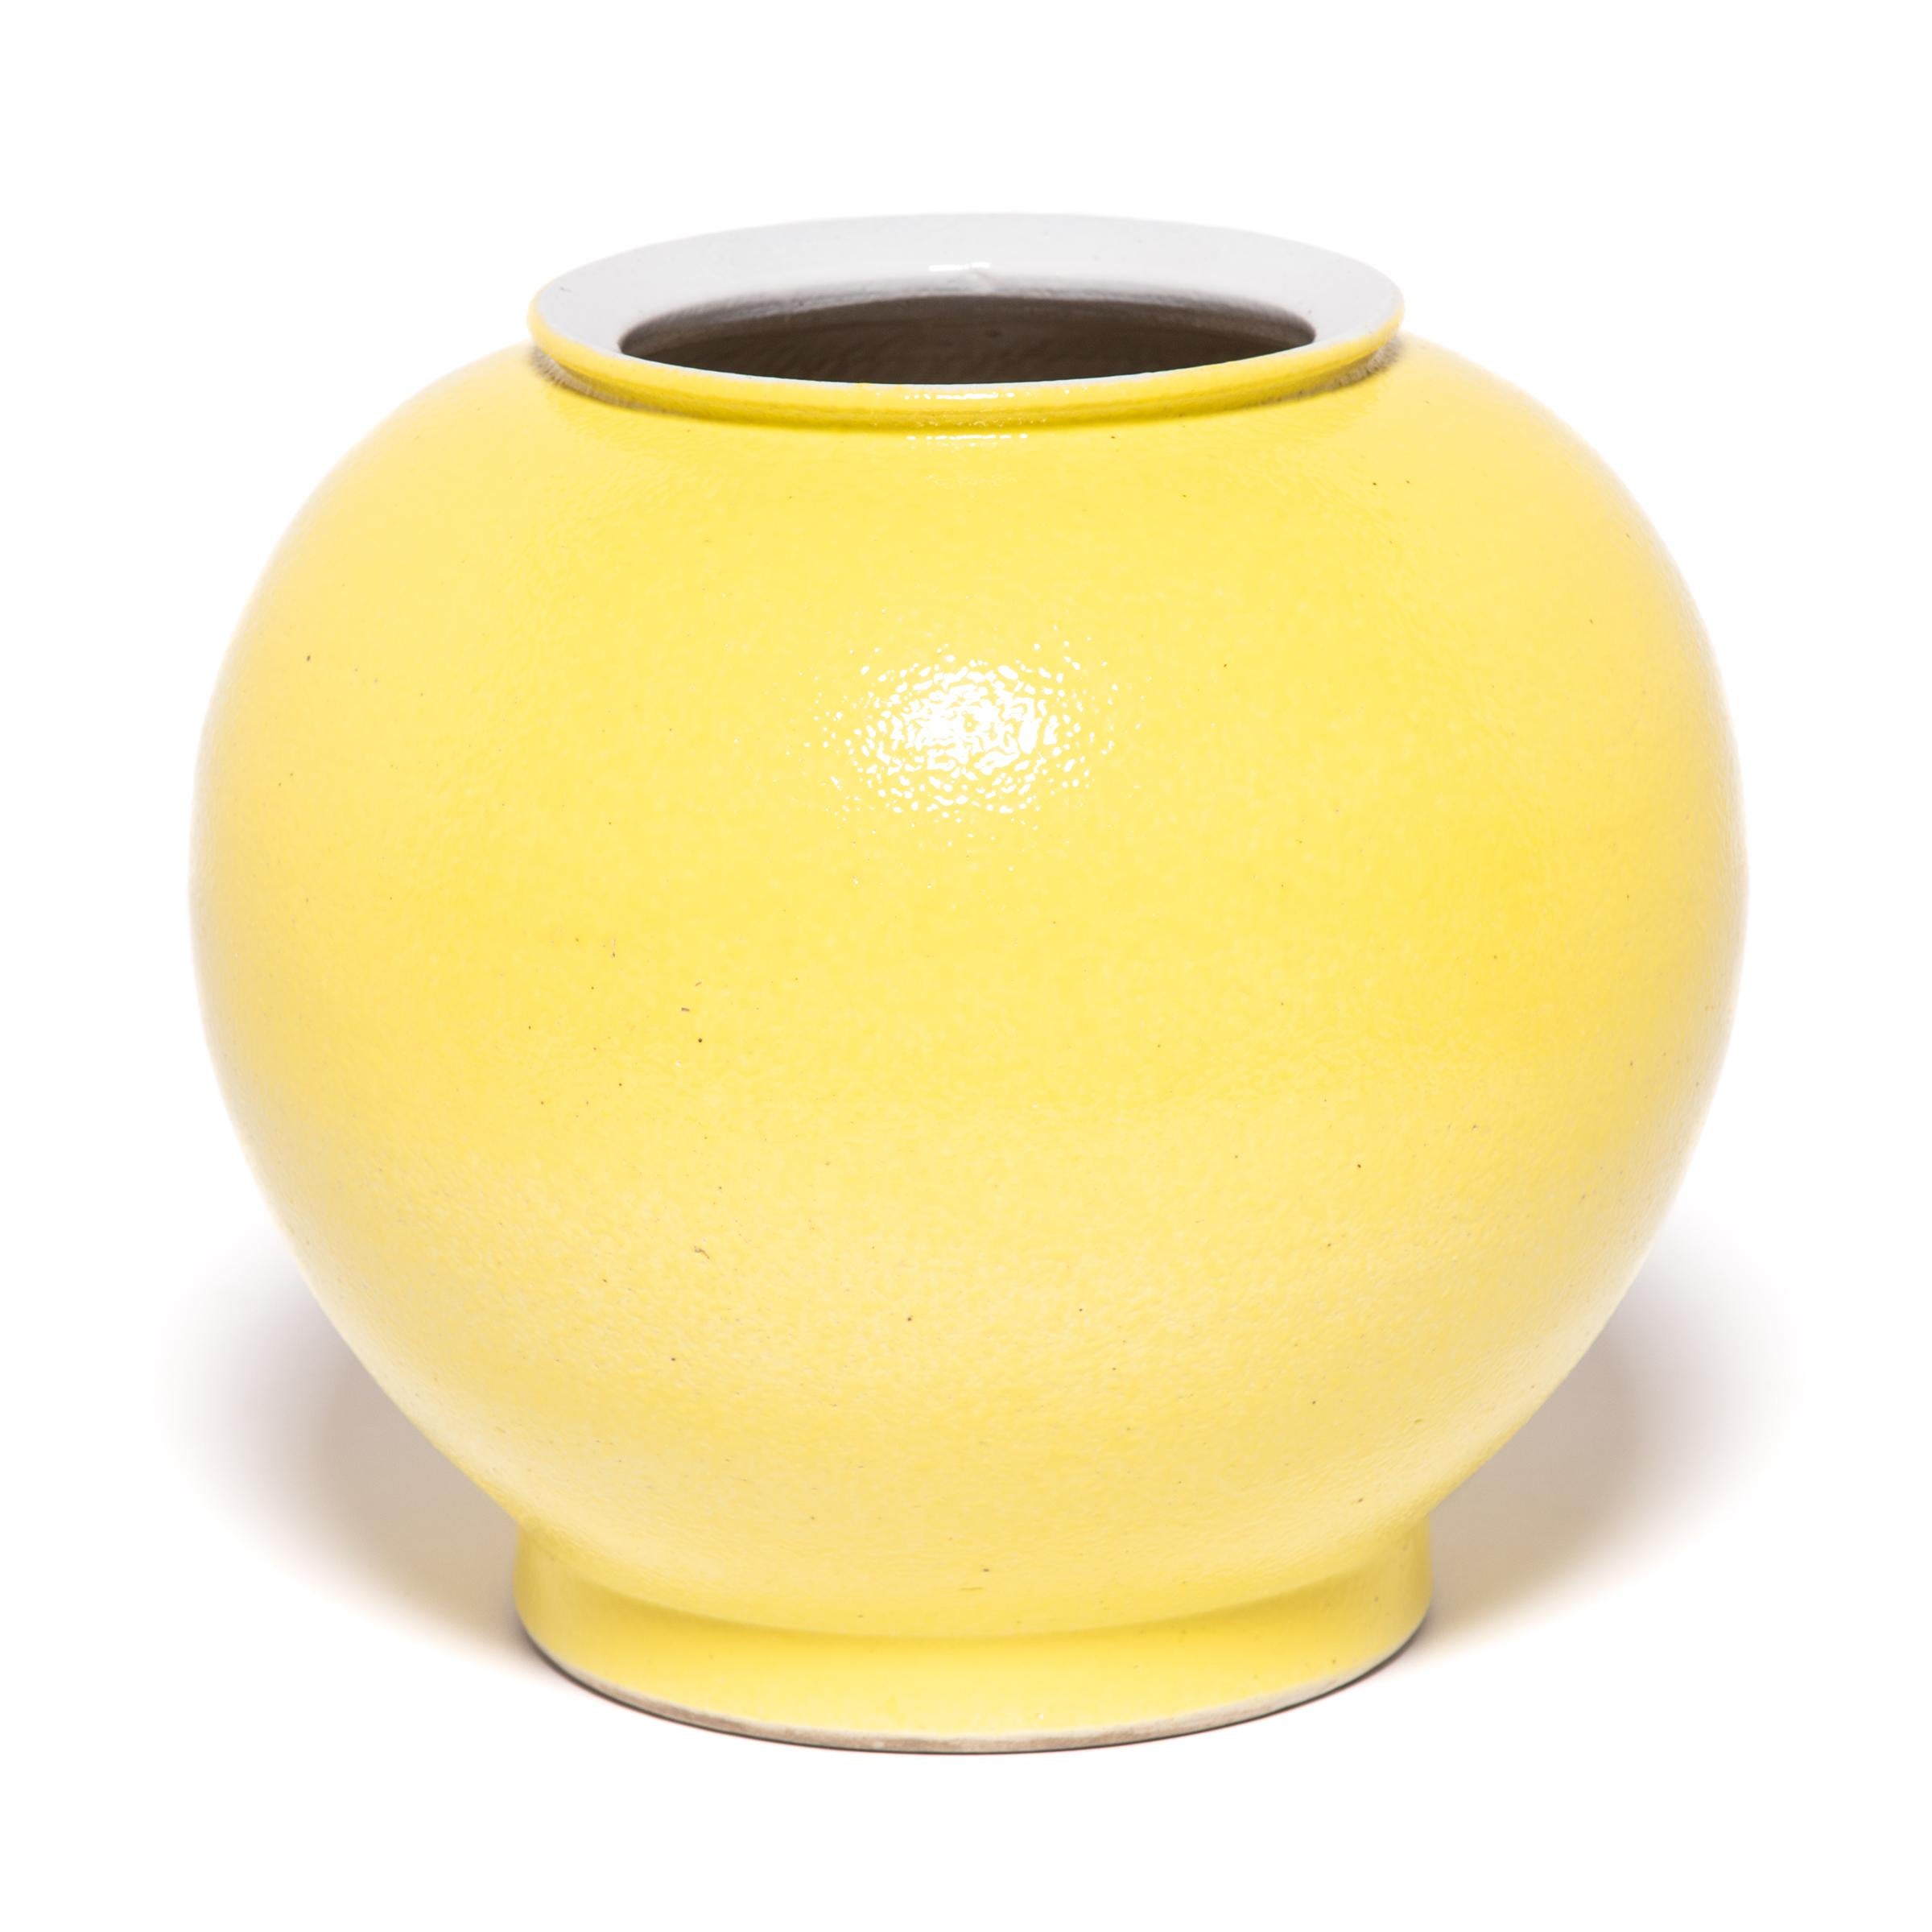 Le jaune vif saisissant de ce vase s'inspire d'une longue tradition chinoise consistant à émailler des formes sculpturales avec une seule couleur qui fait sensation. Cette version contemporaine habille les courbes rondes de la forme d'un vase oignon